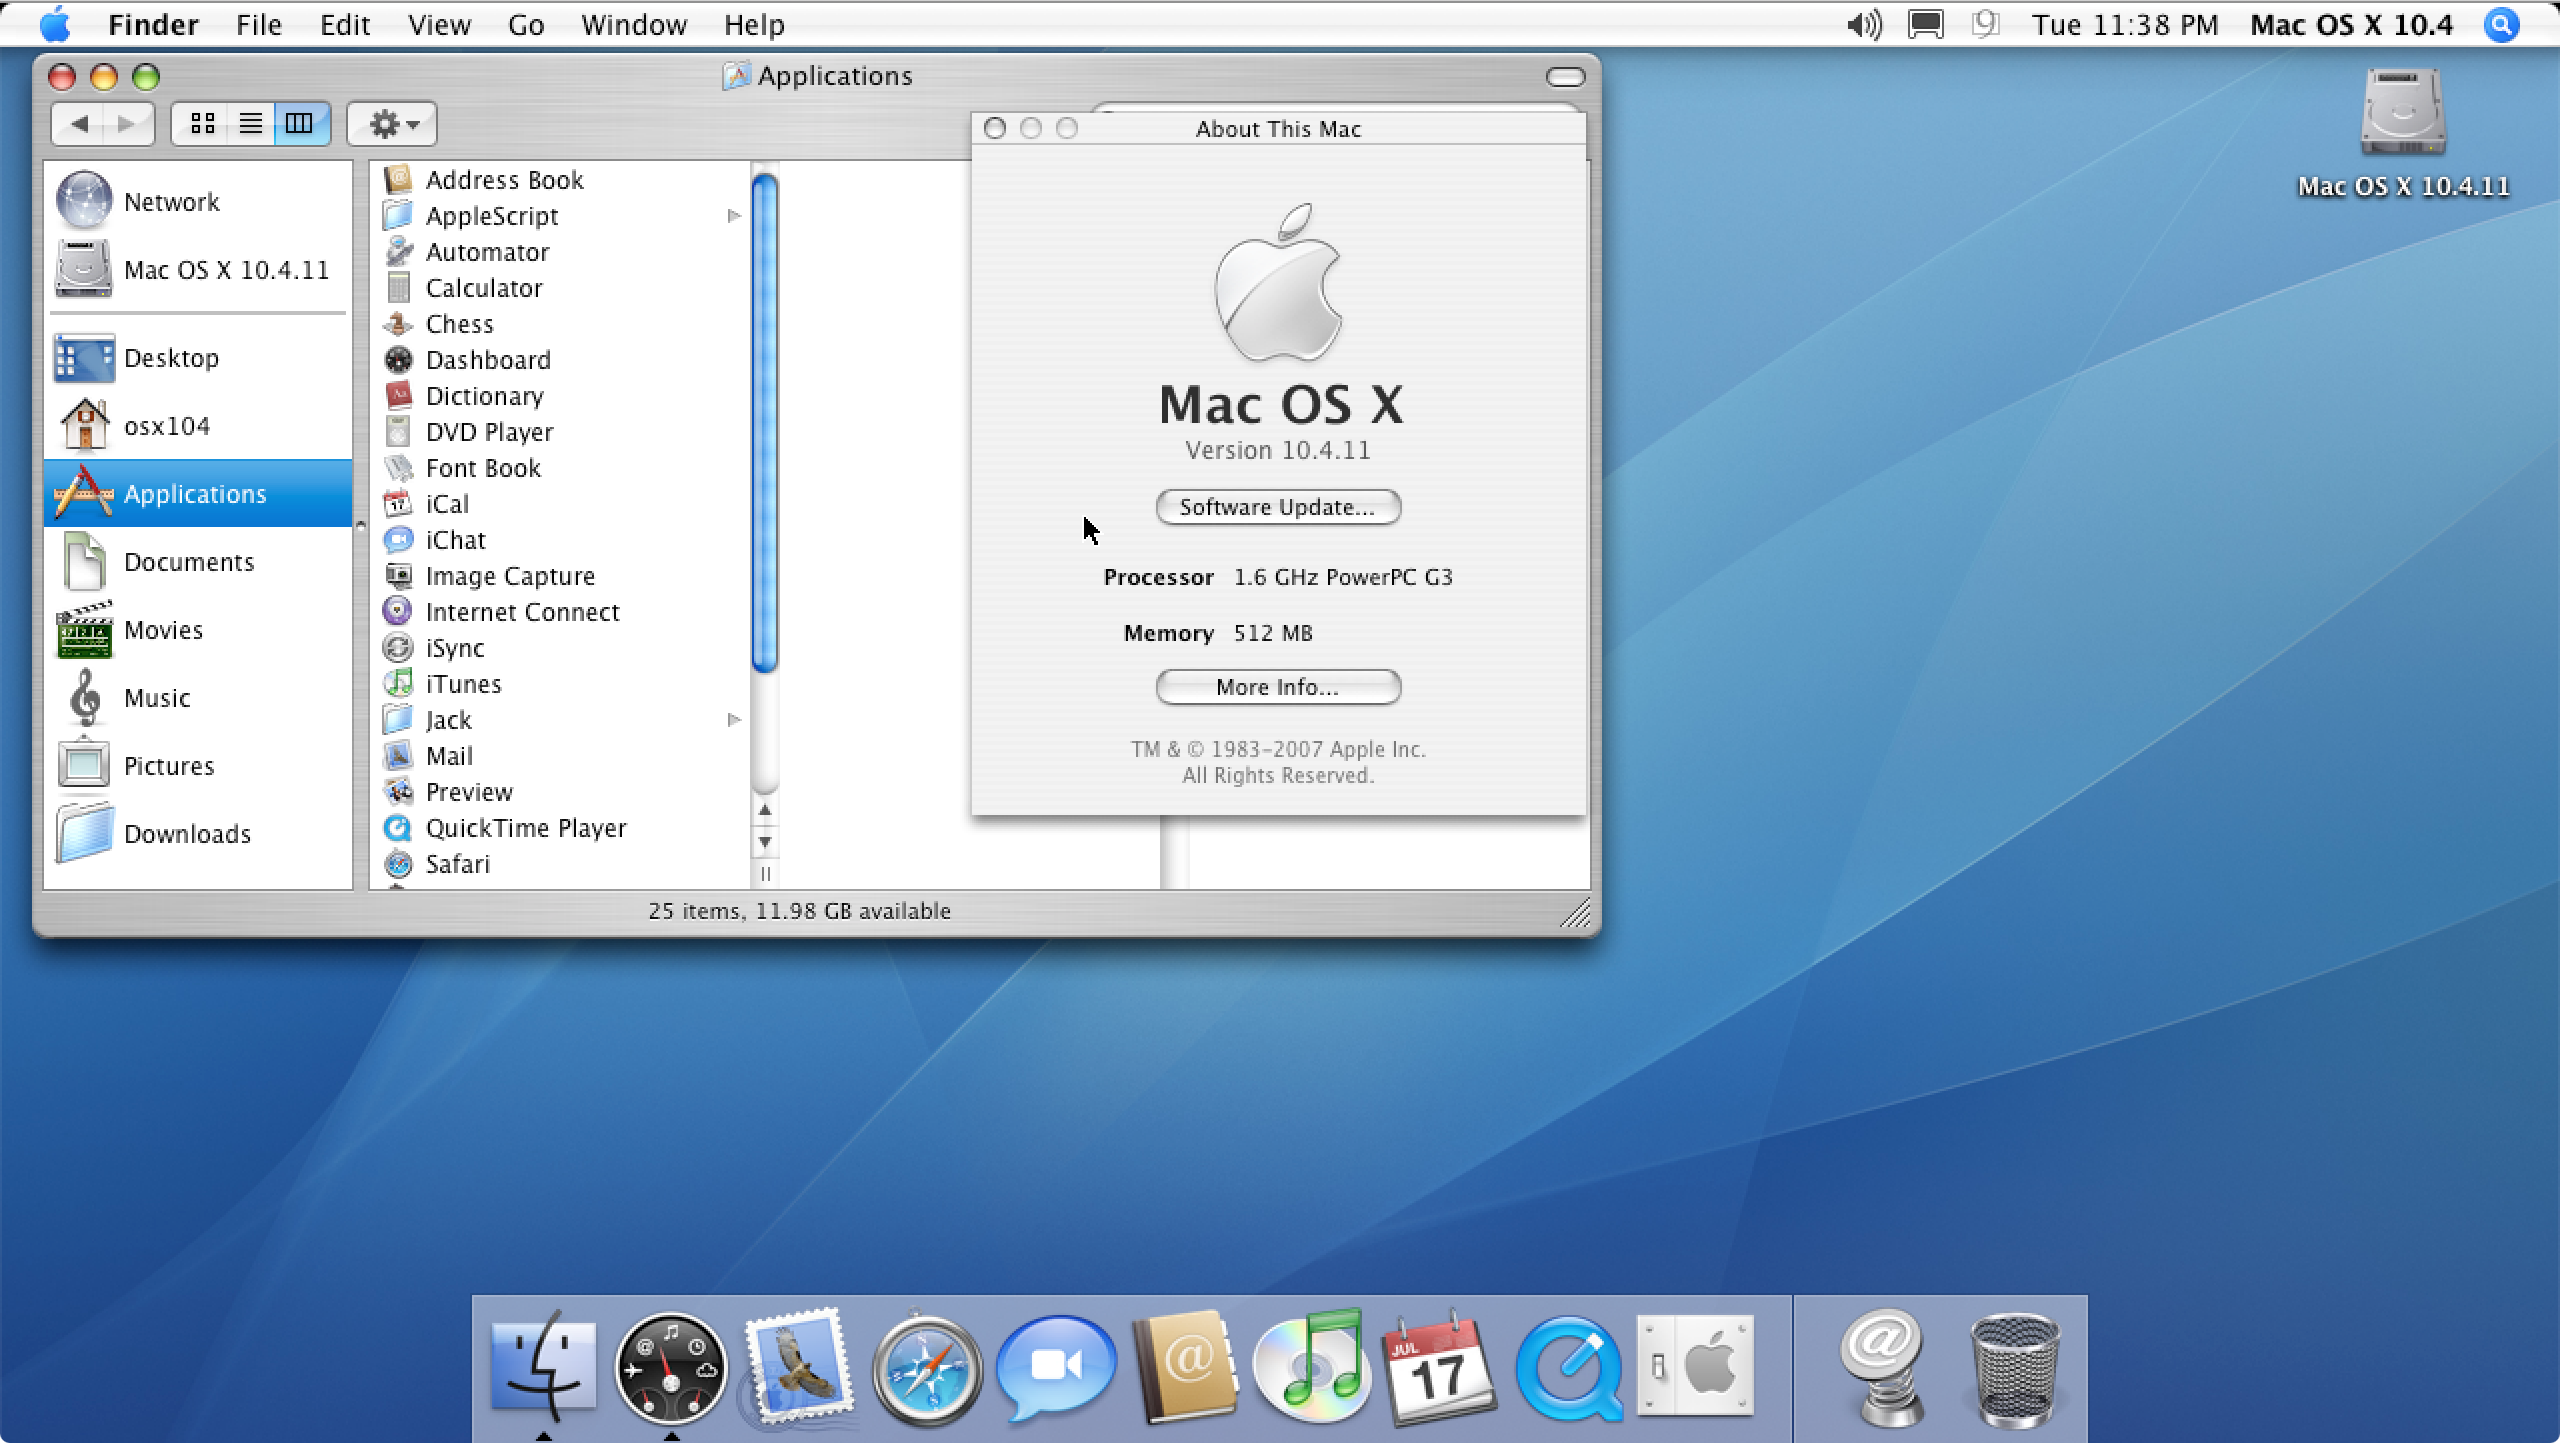 update mac os x 10.5 8 to 10.6